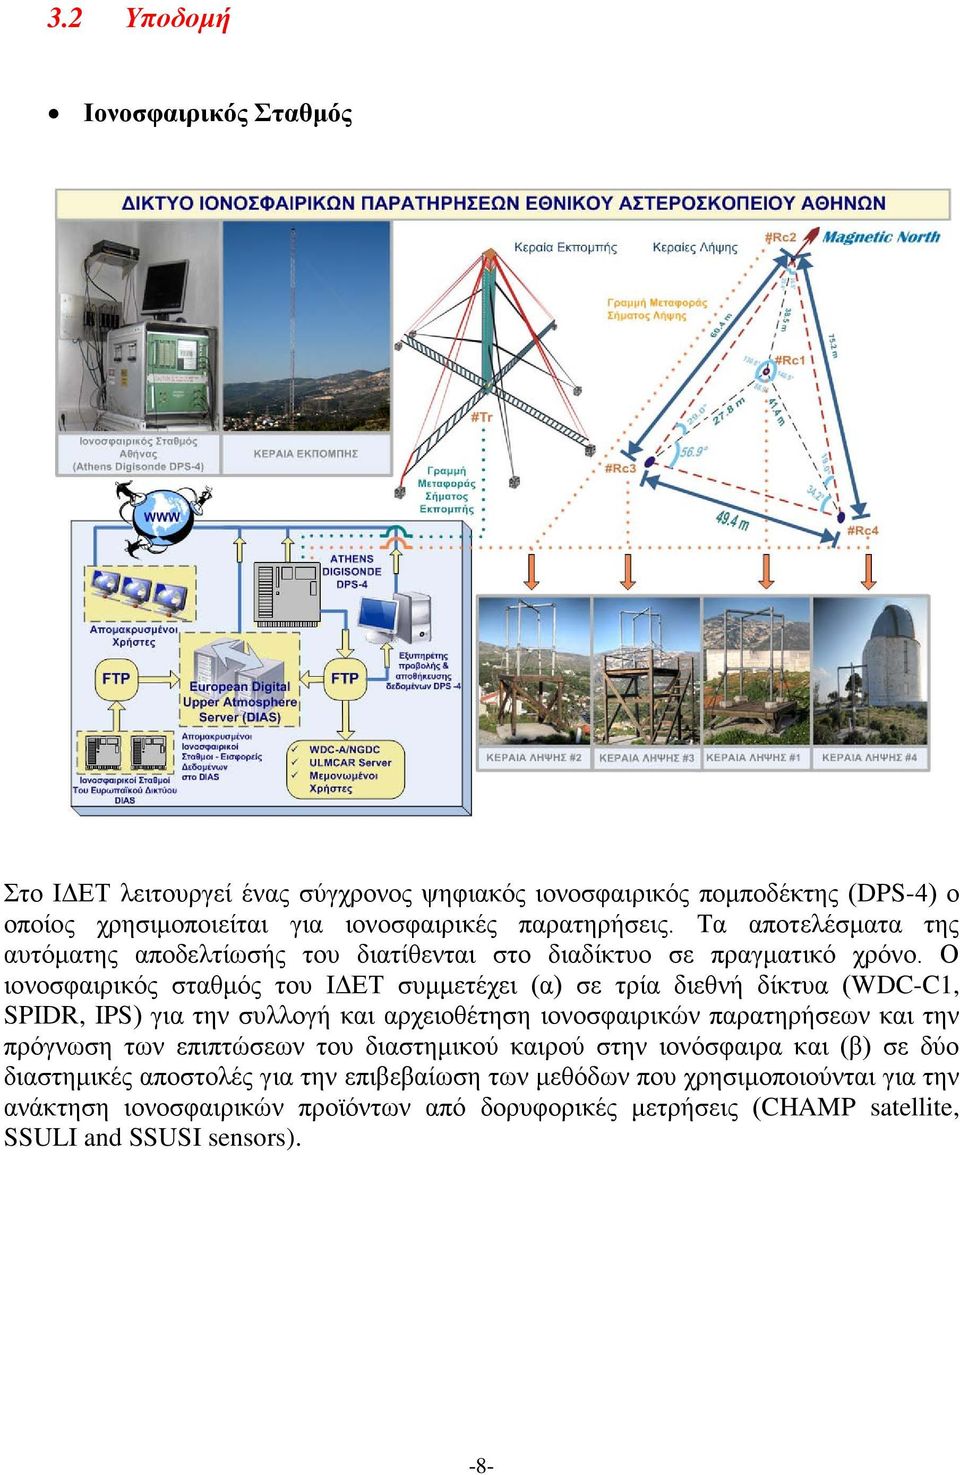 Ο ιονοσφαιρικός σταθμός του ΙΔΕΤ συμμετέχει (α) σε τρία διεθνή δίκτυα (WDC-C1, SPIDR, IPS) για την συλλογή και αρχειοθέτηση ιονοσφαιρικών παρατηρήσεων και την πρόγνωση των